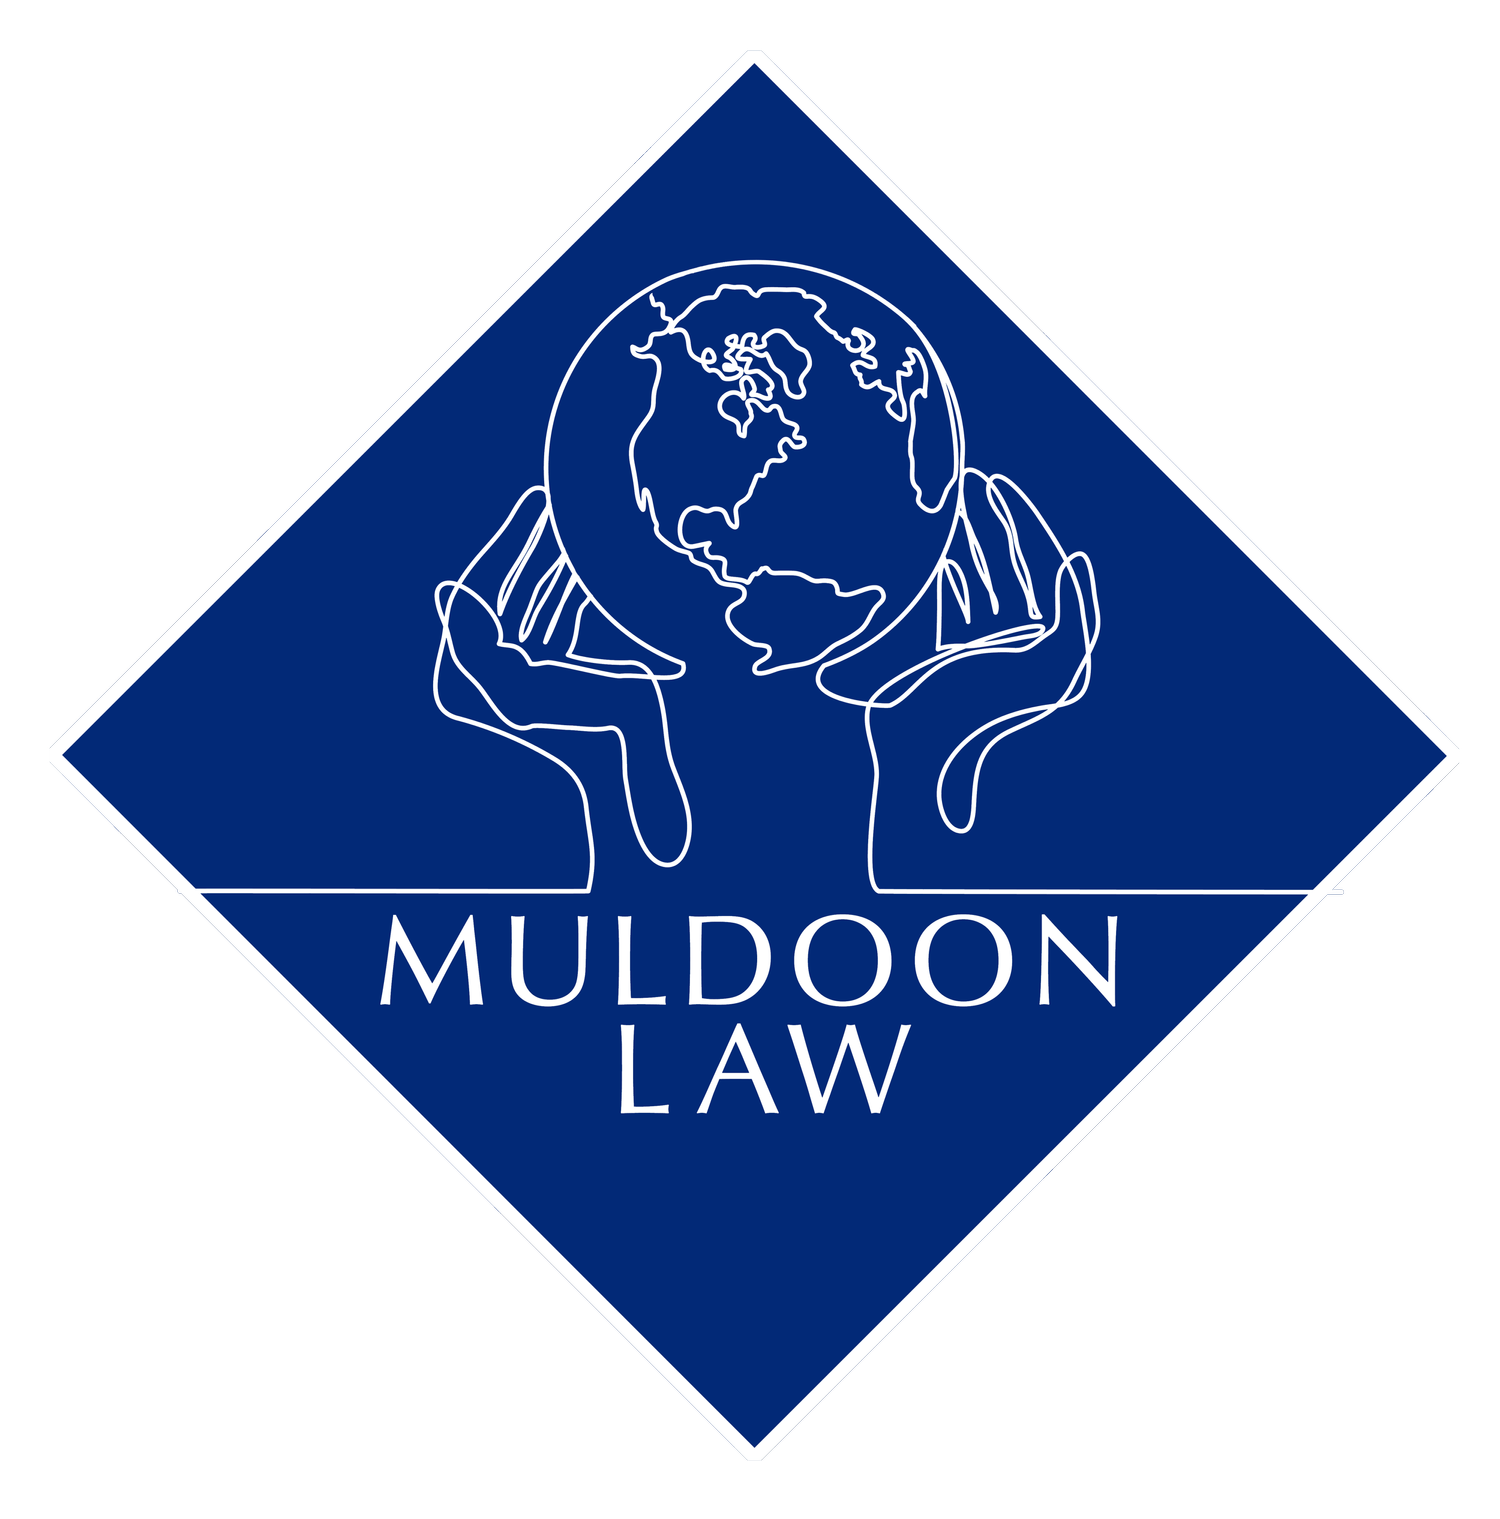 Brian Muldoon Law